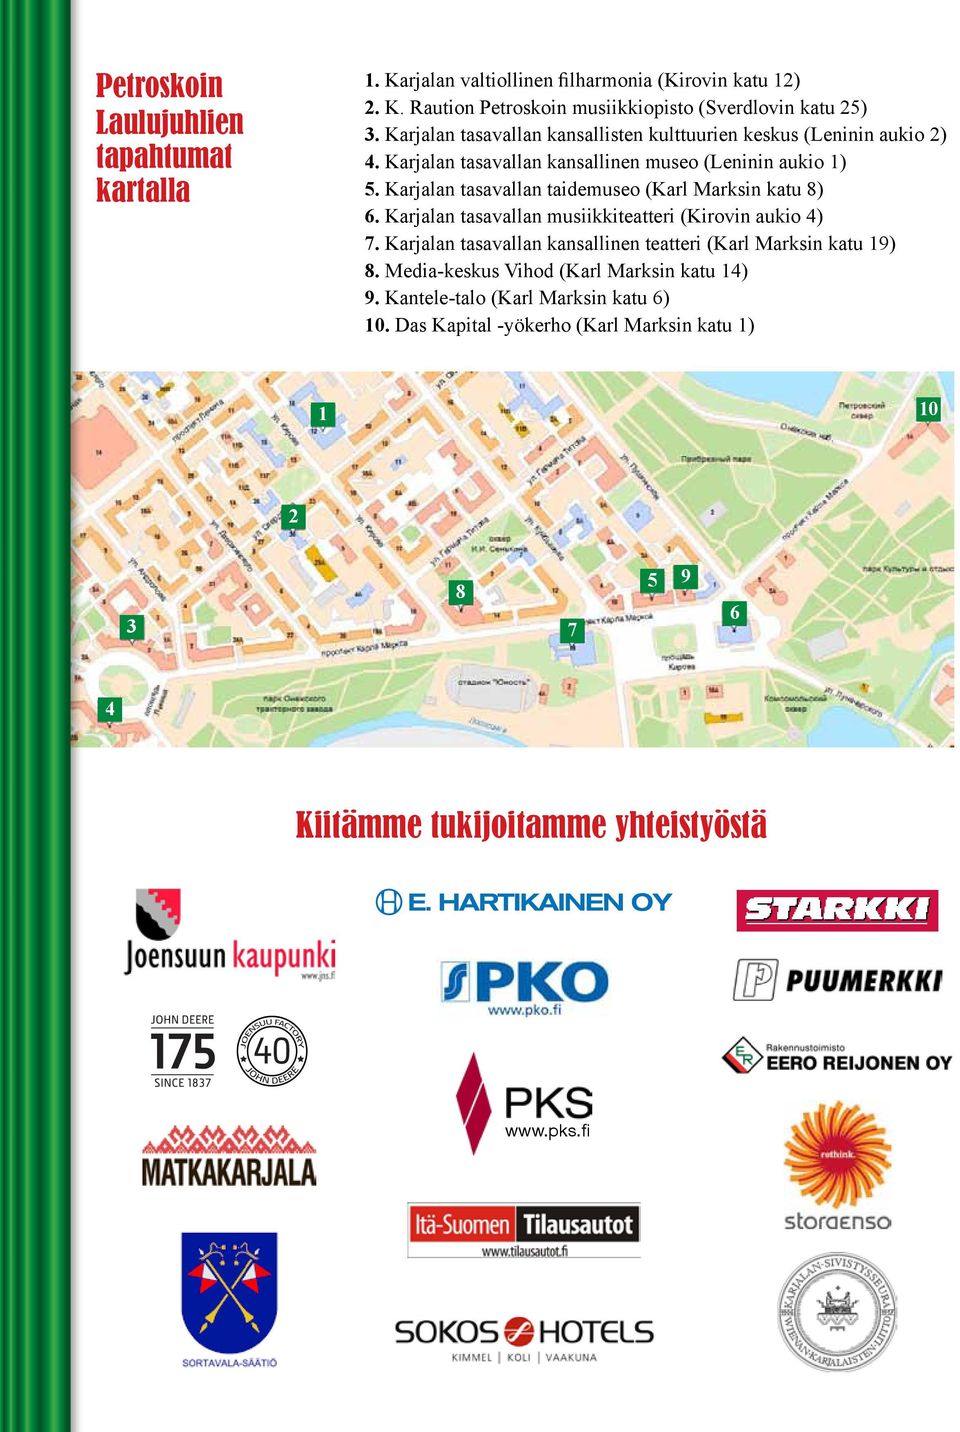 Karjalan tasavallan taidemuseo (Karl Marksin katu 8) 6. Karjalan tasavallan musiikkiteatteri (Kirovin aukio 4) 7.